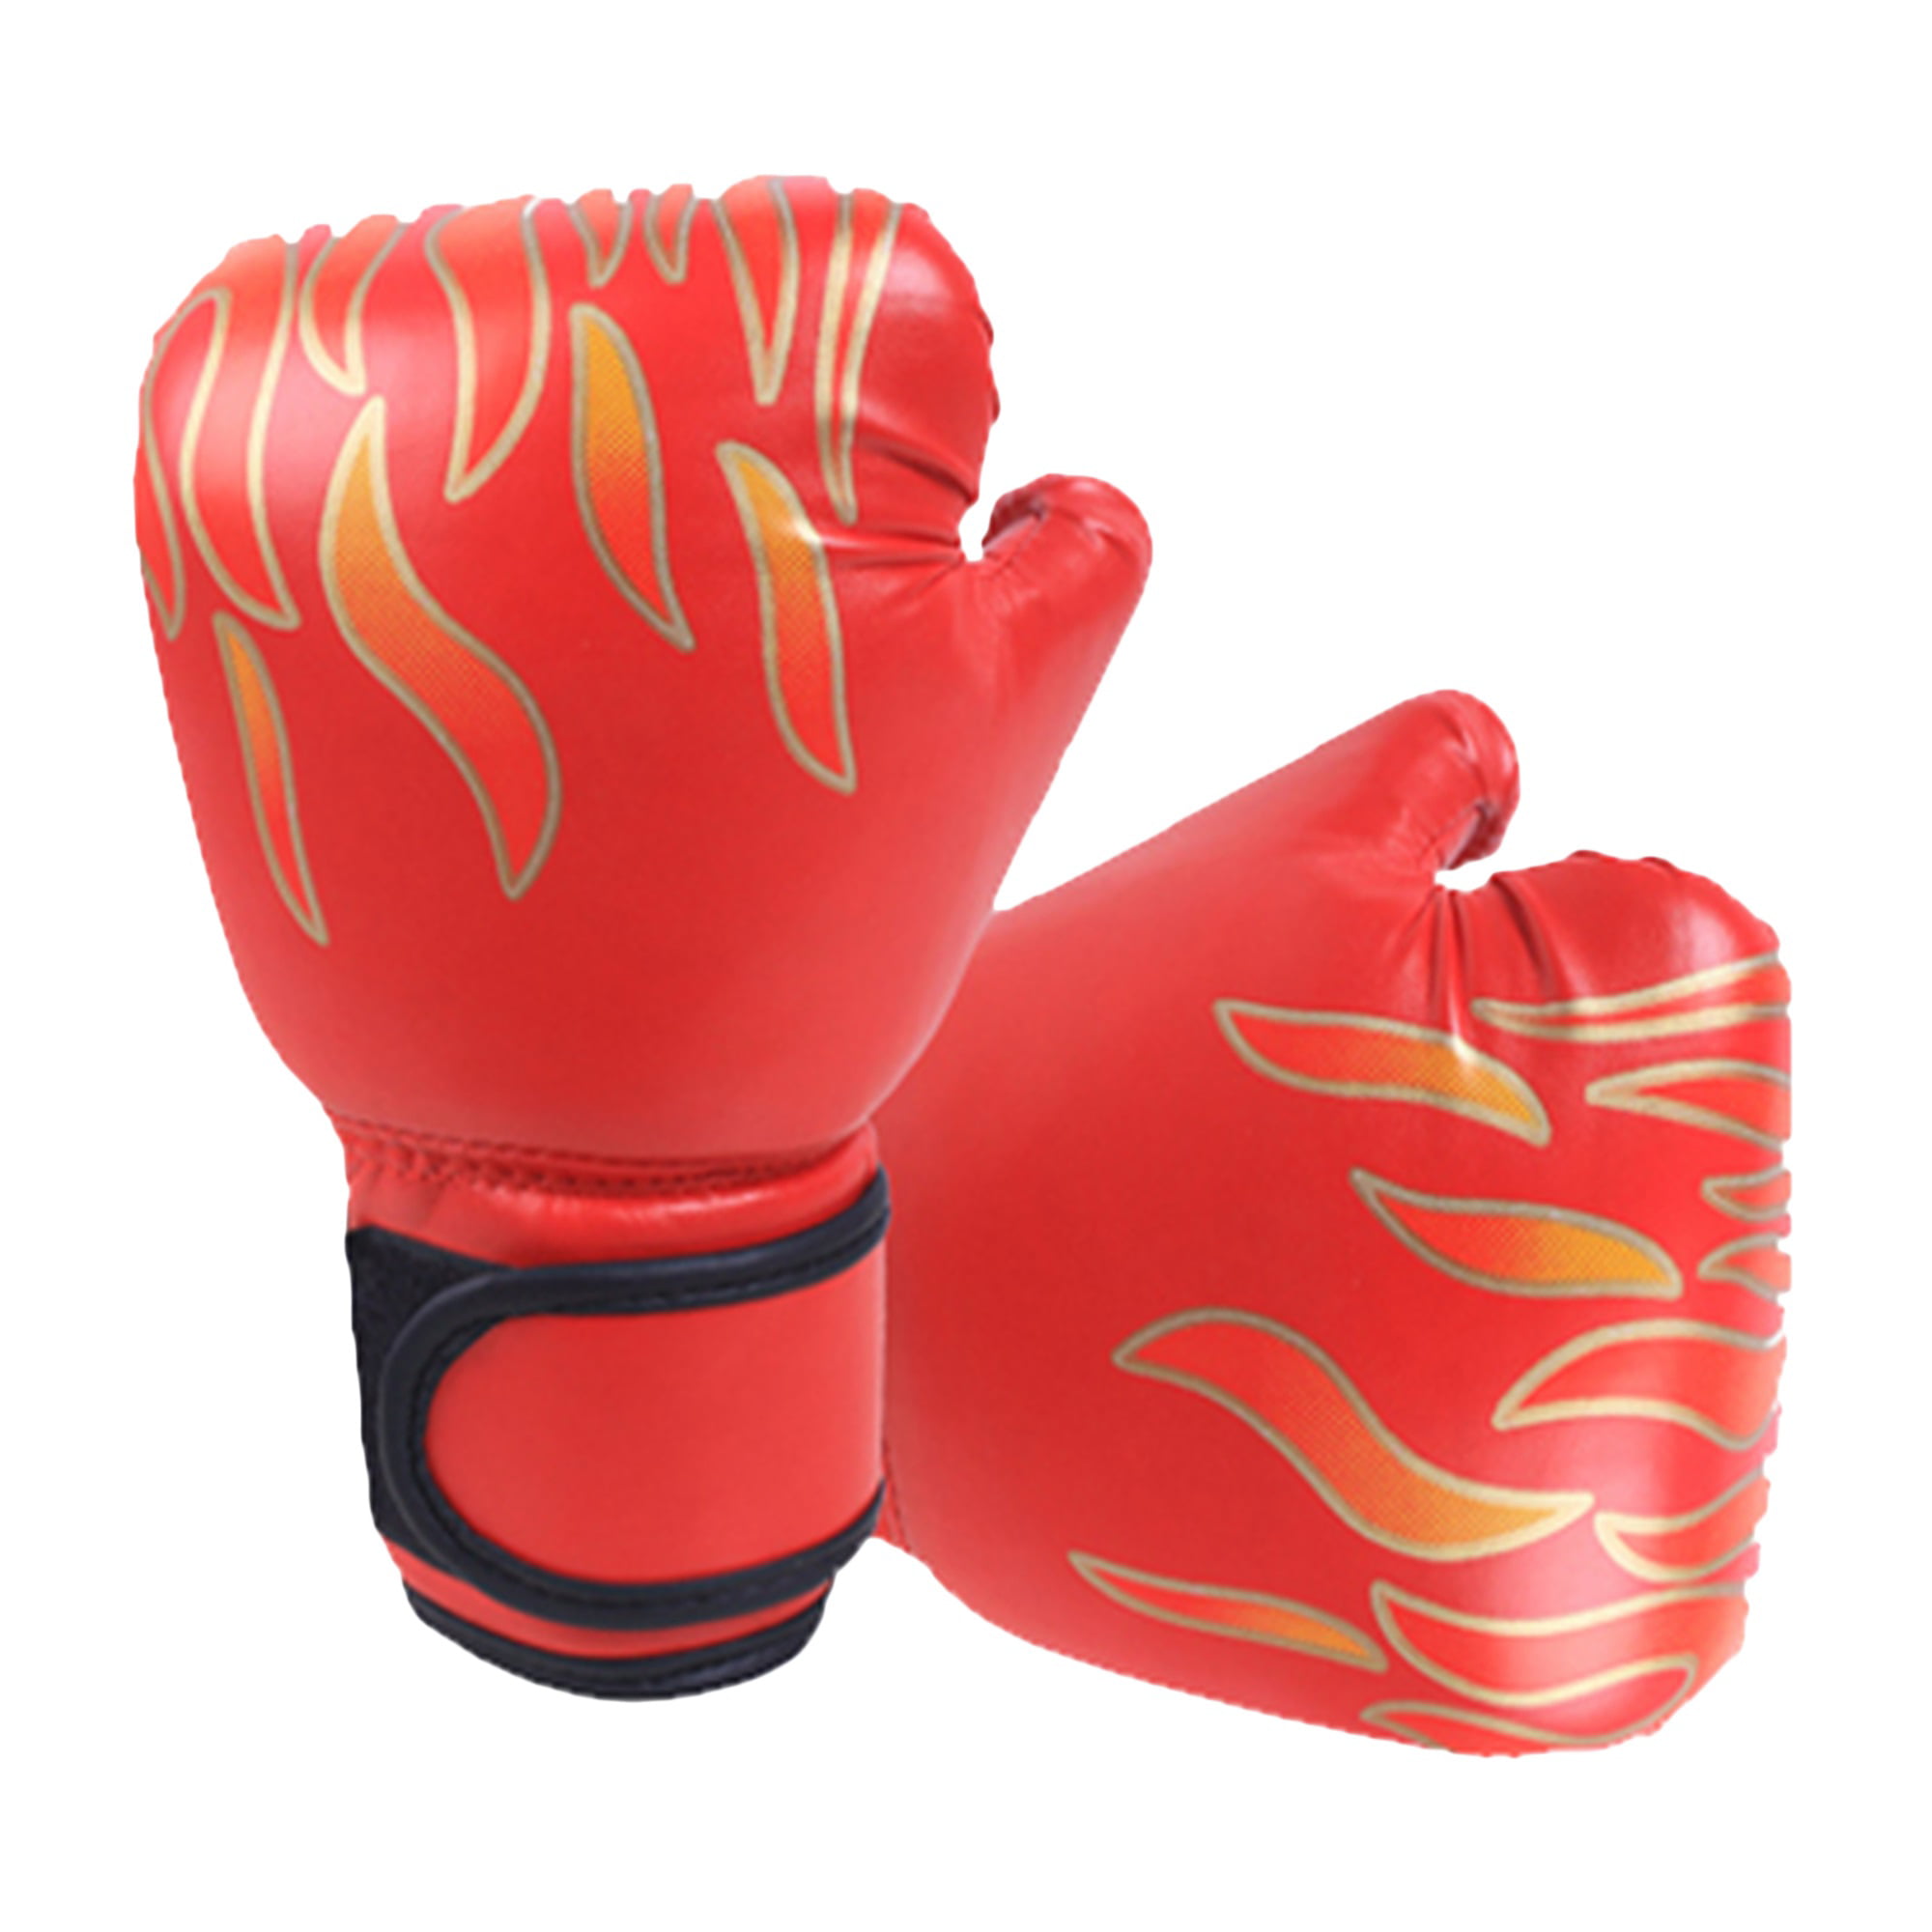 Junior Boxing Gloves Focus Pads PunchBag Sparring Hook & Jab Kids 4,6,8 OZ 